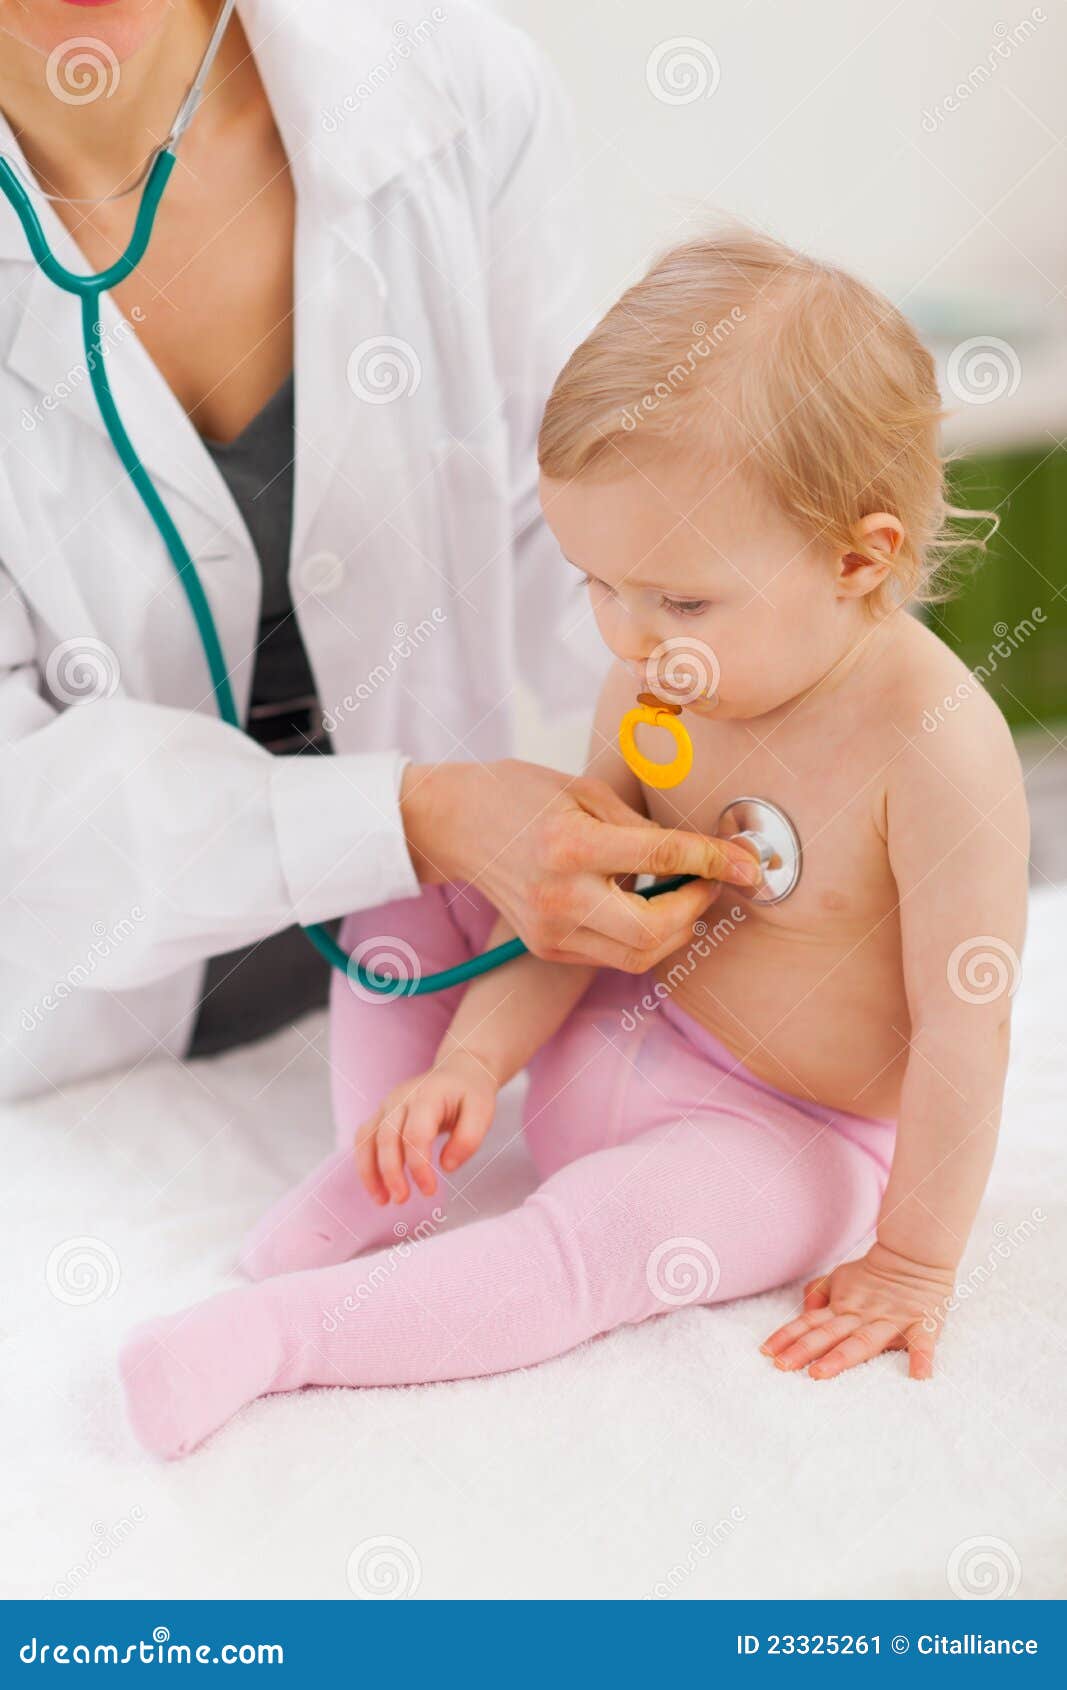 pediatric doctor examine baby